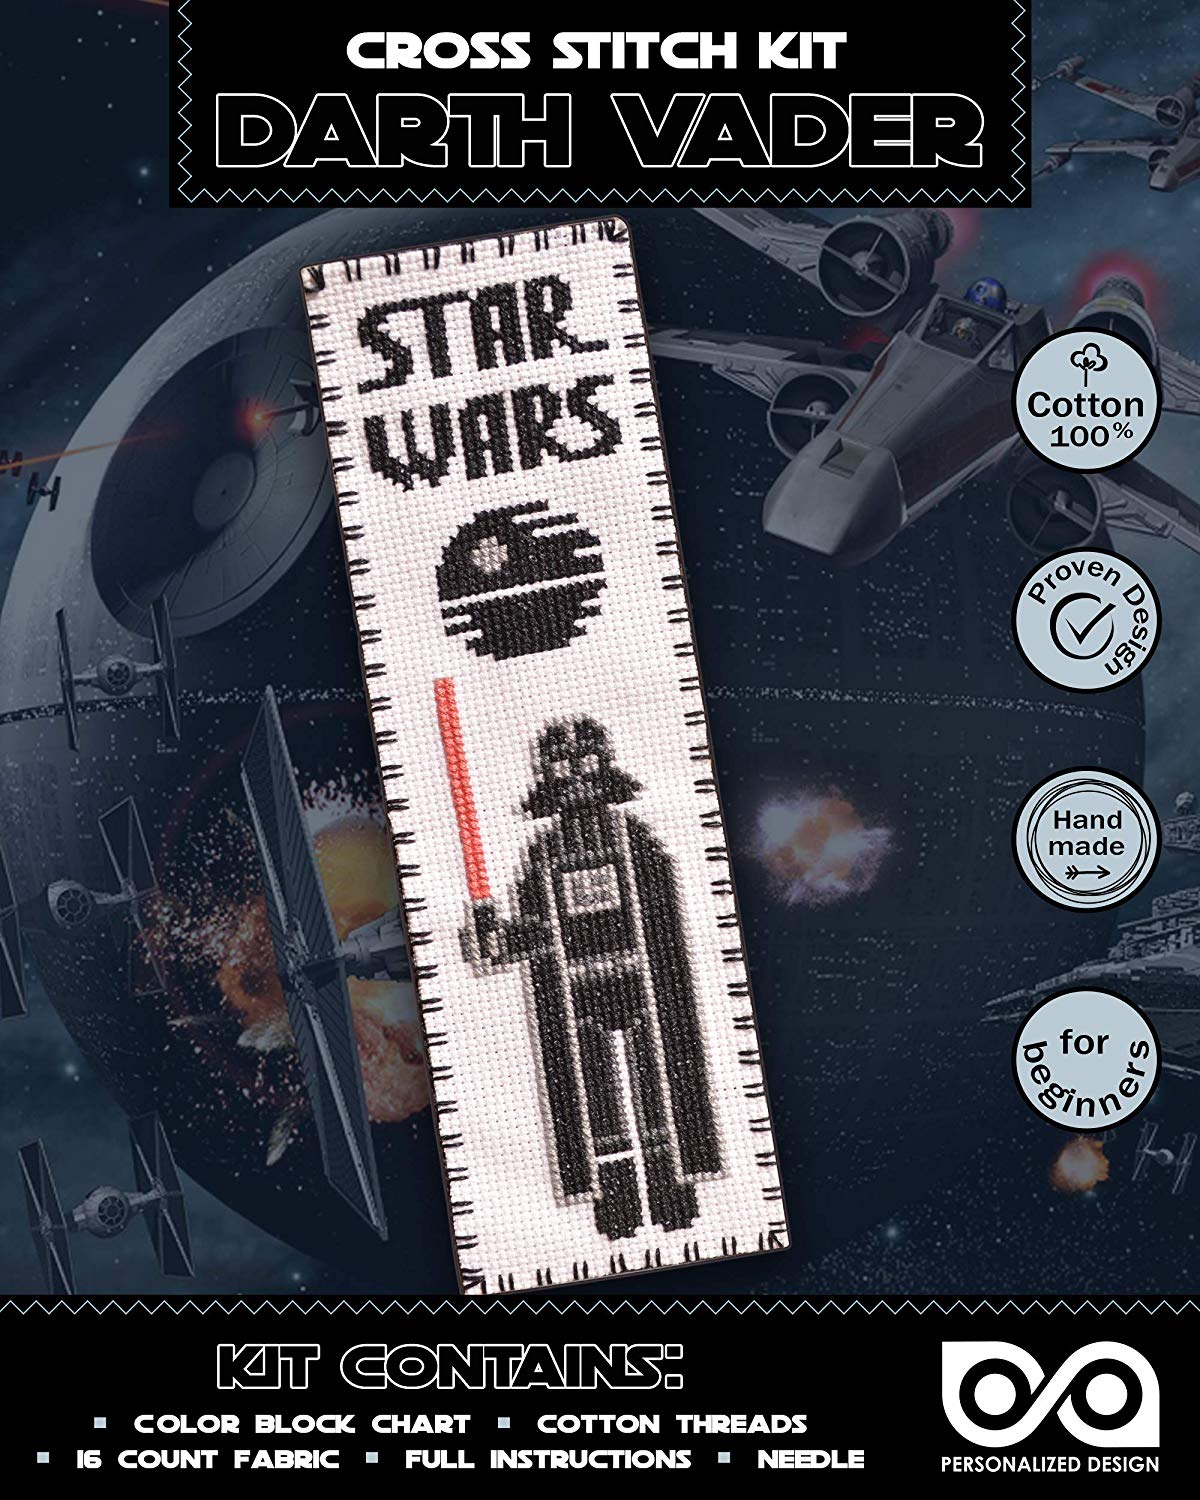 Cross Stitch Kits 'Star Wars' Darth Vader